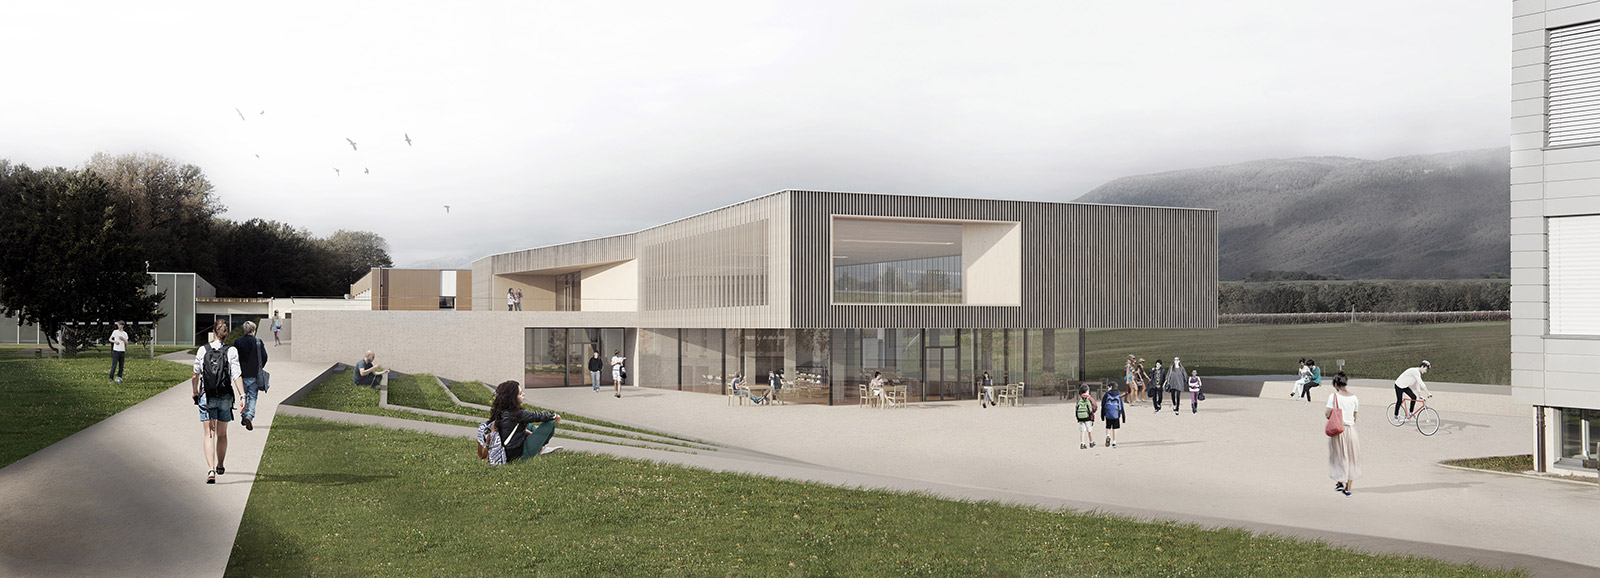 Extension of Elisabeth de Portes college / EYRE architecture